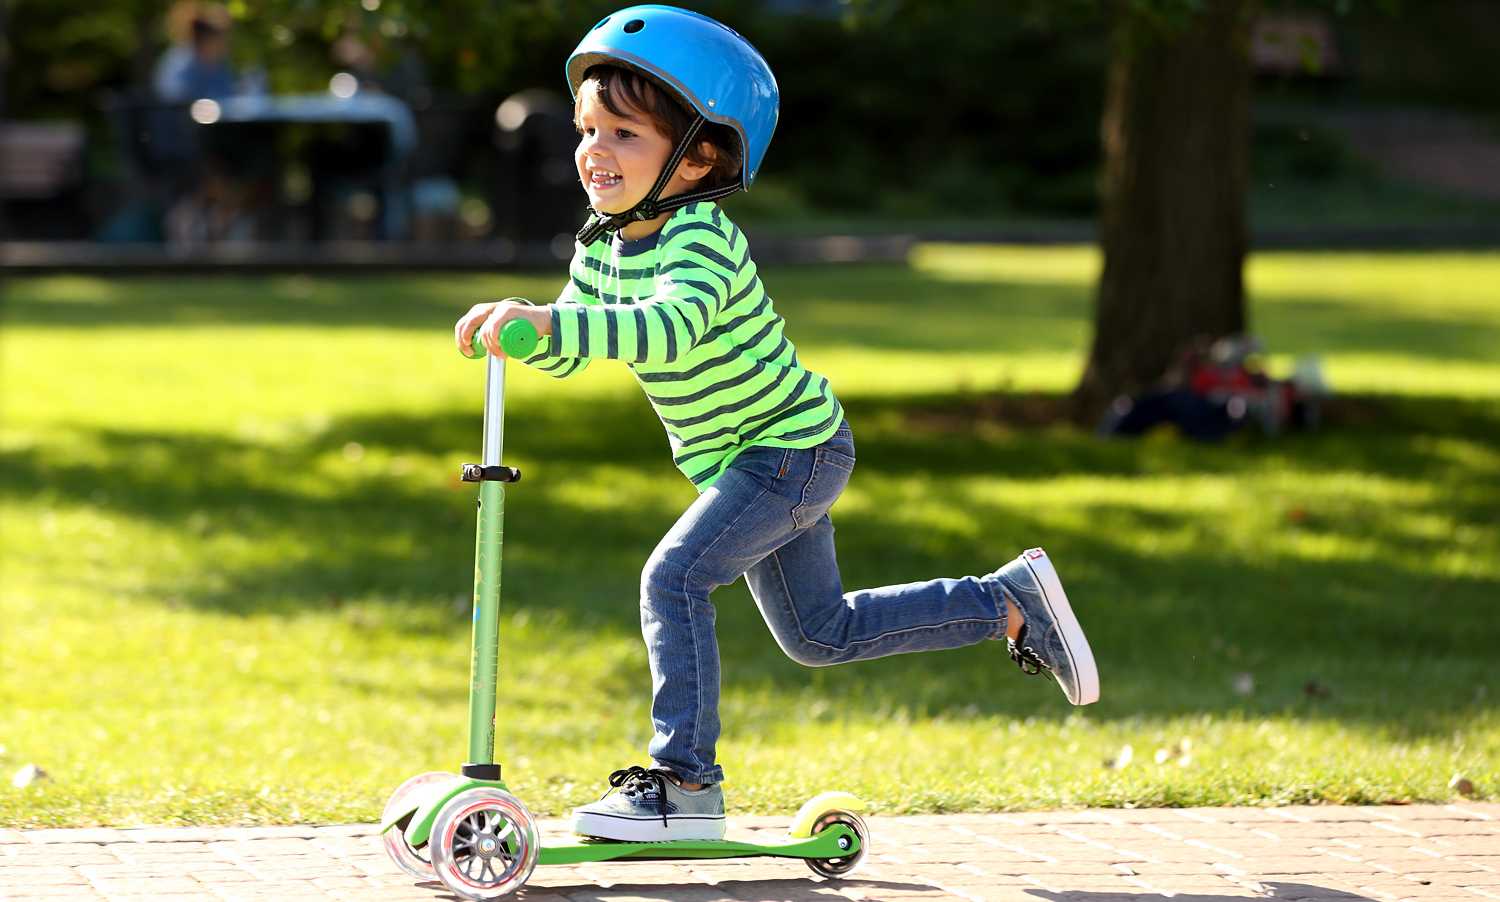 Самокаты для детей от 2 лет: рейтинг лучших детских 3-колесных моделей со светящимися колесами. как выбрать самокат? как научить кататься?